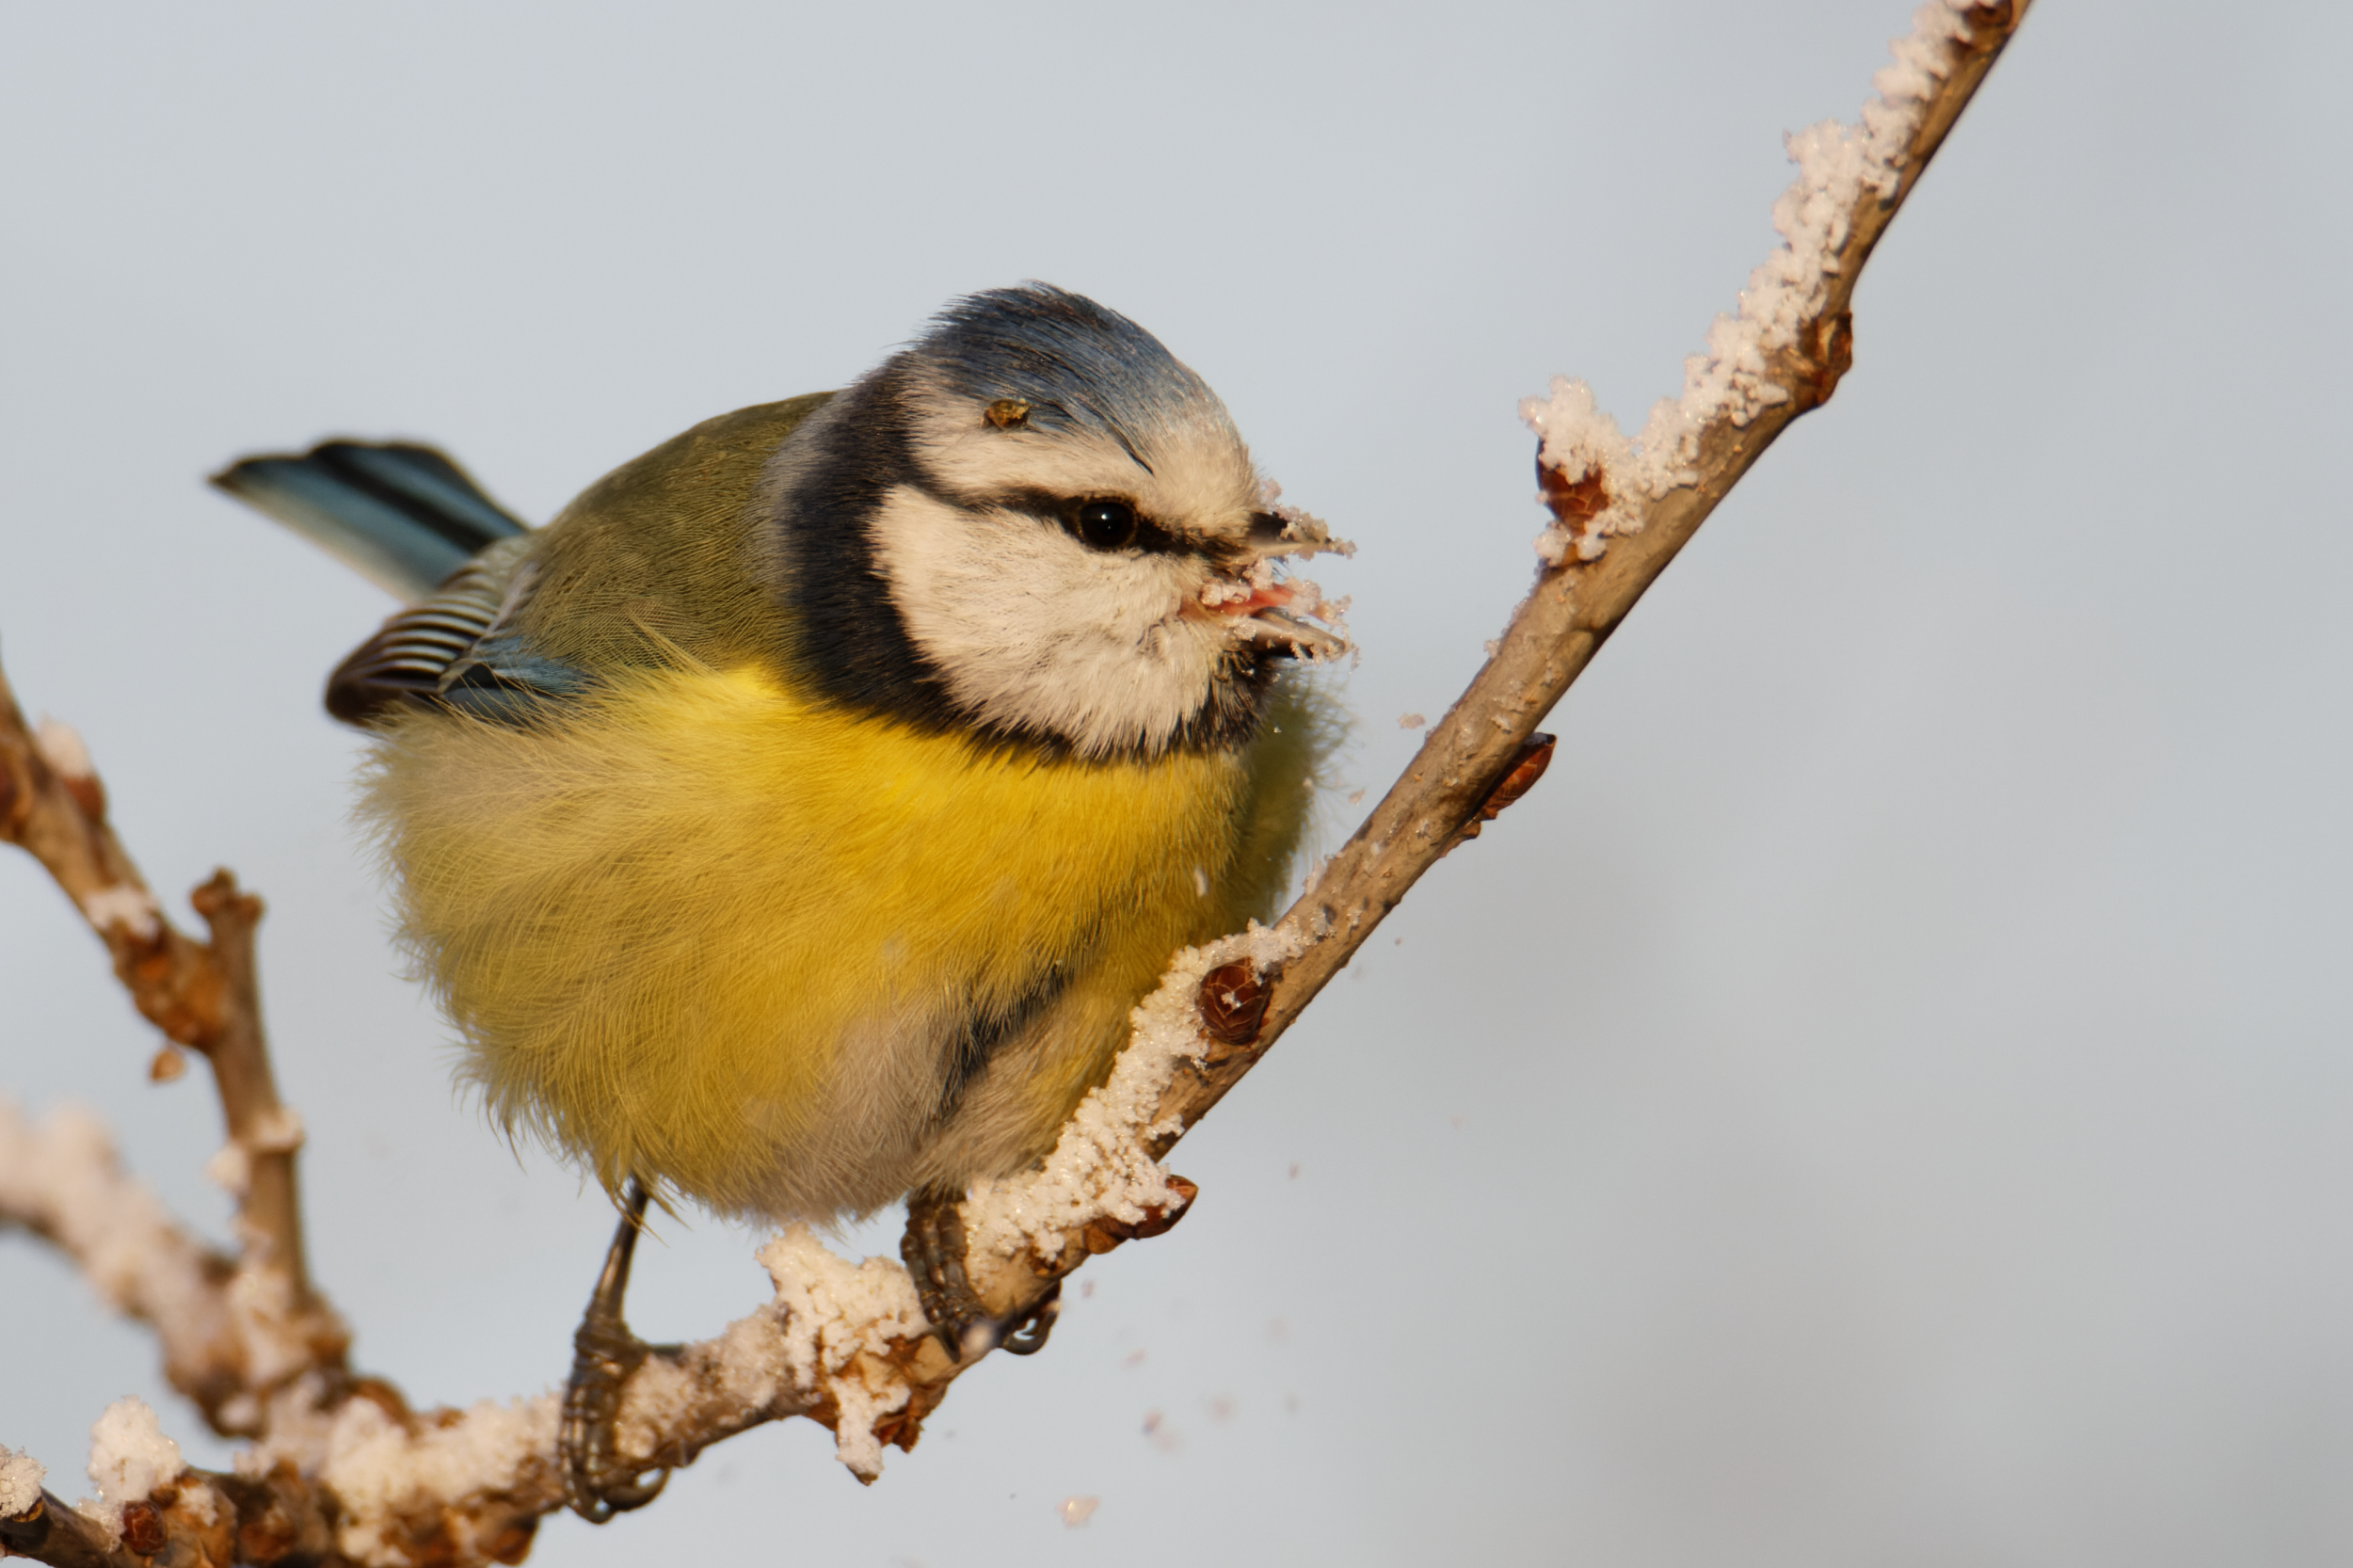 ptaki zimujące w Polsce jedzą śnieg by zaspokoić pragnienie - szron również